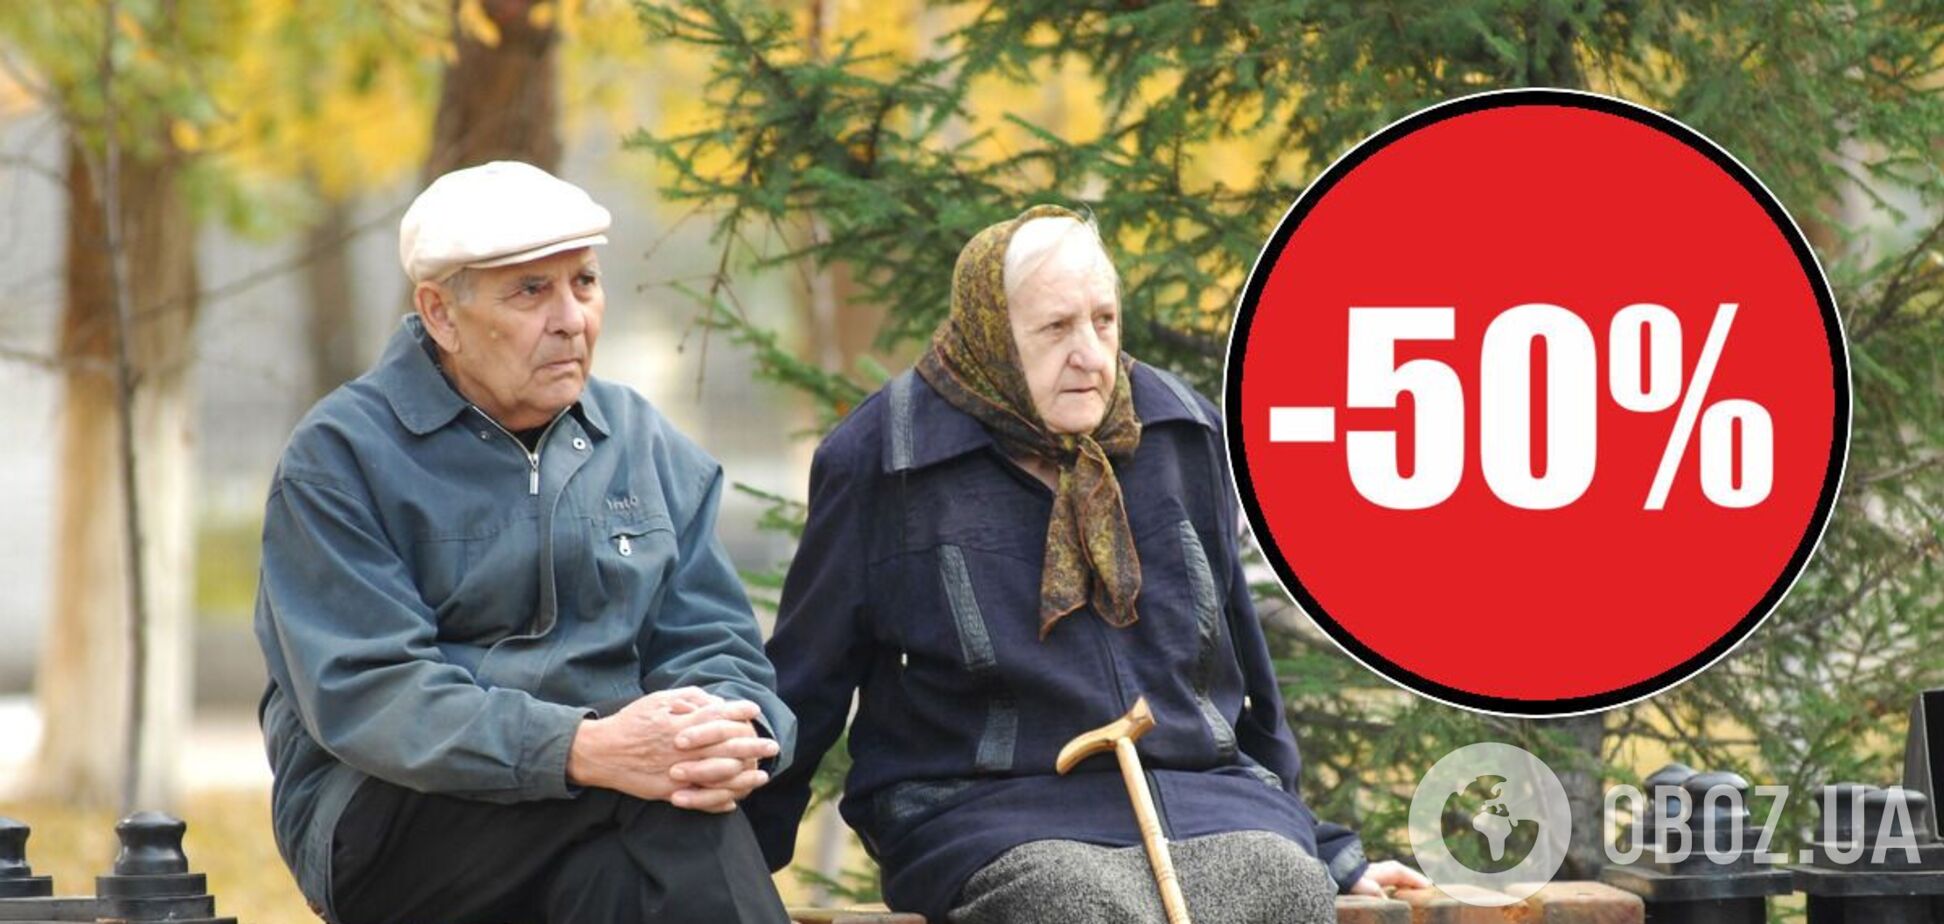 Стало известно, за что в Украине могут забрать 50% пенсии